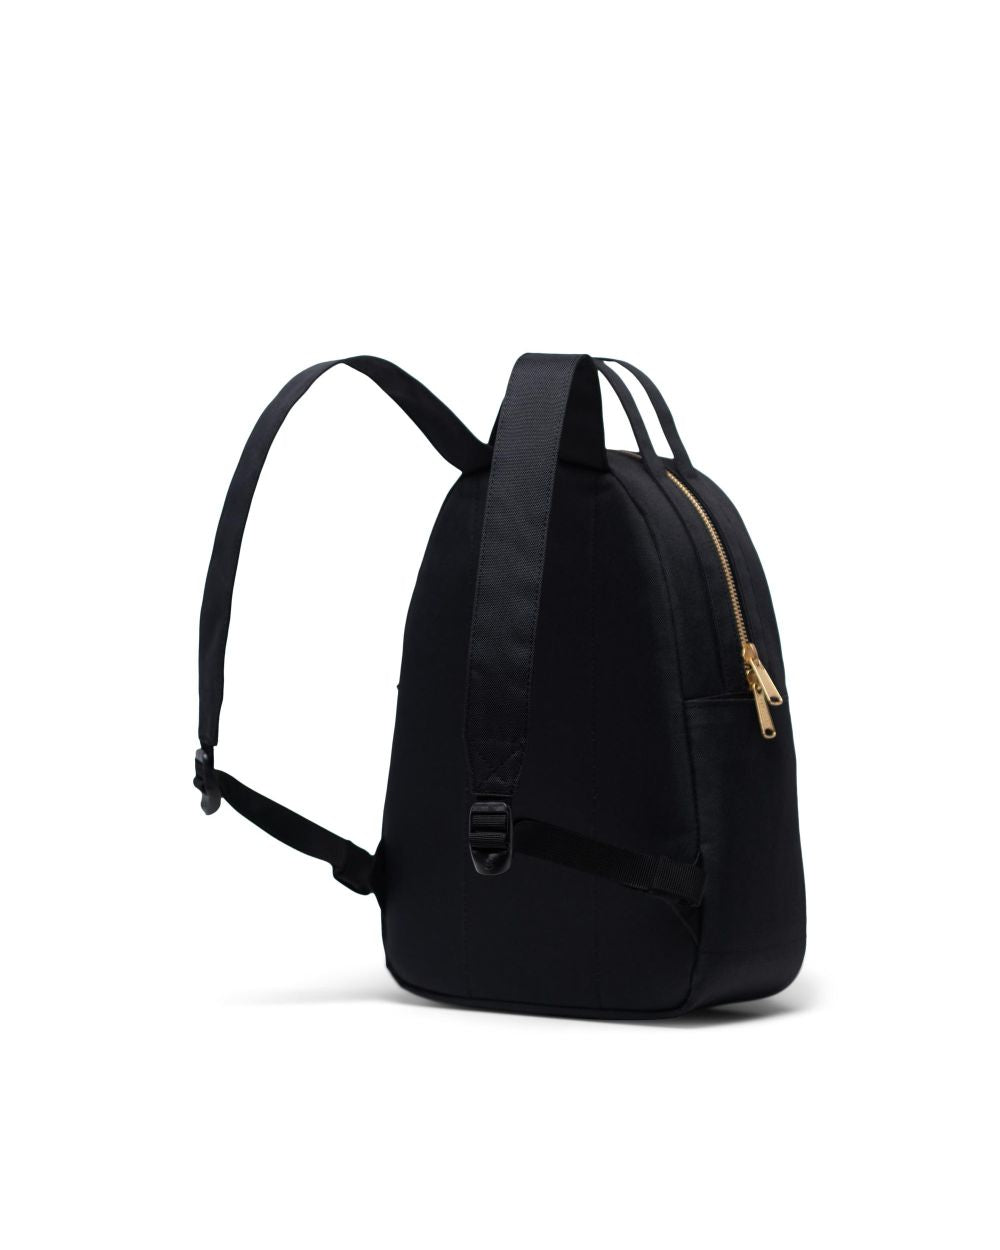 Nova Backpack Small - Summer Floral Black